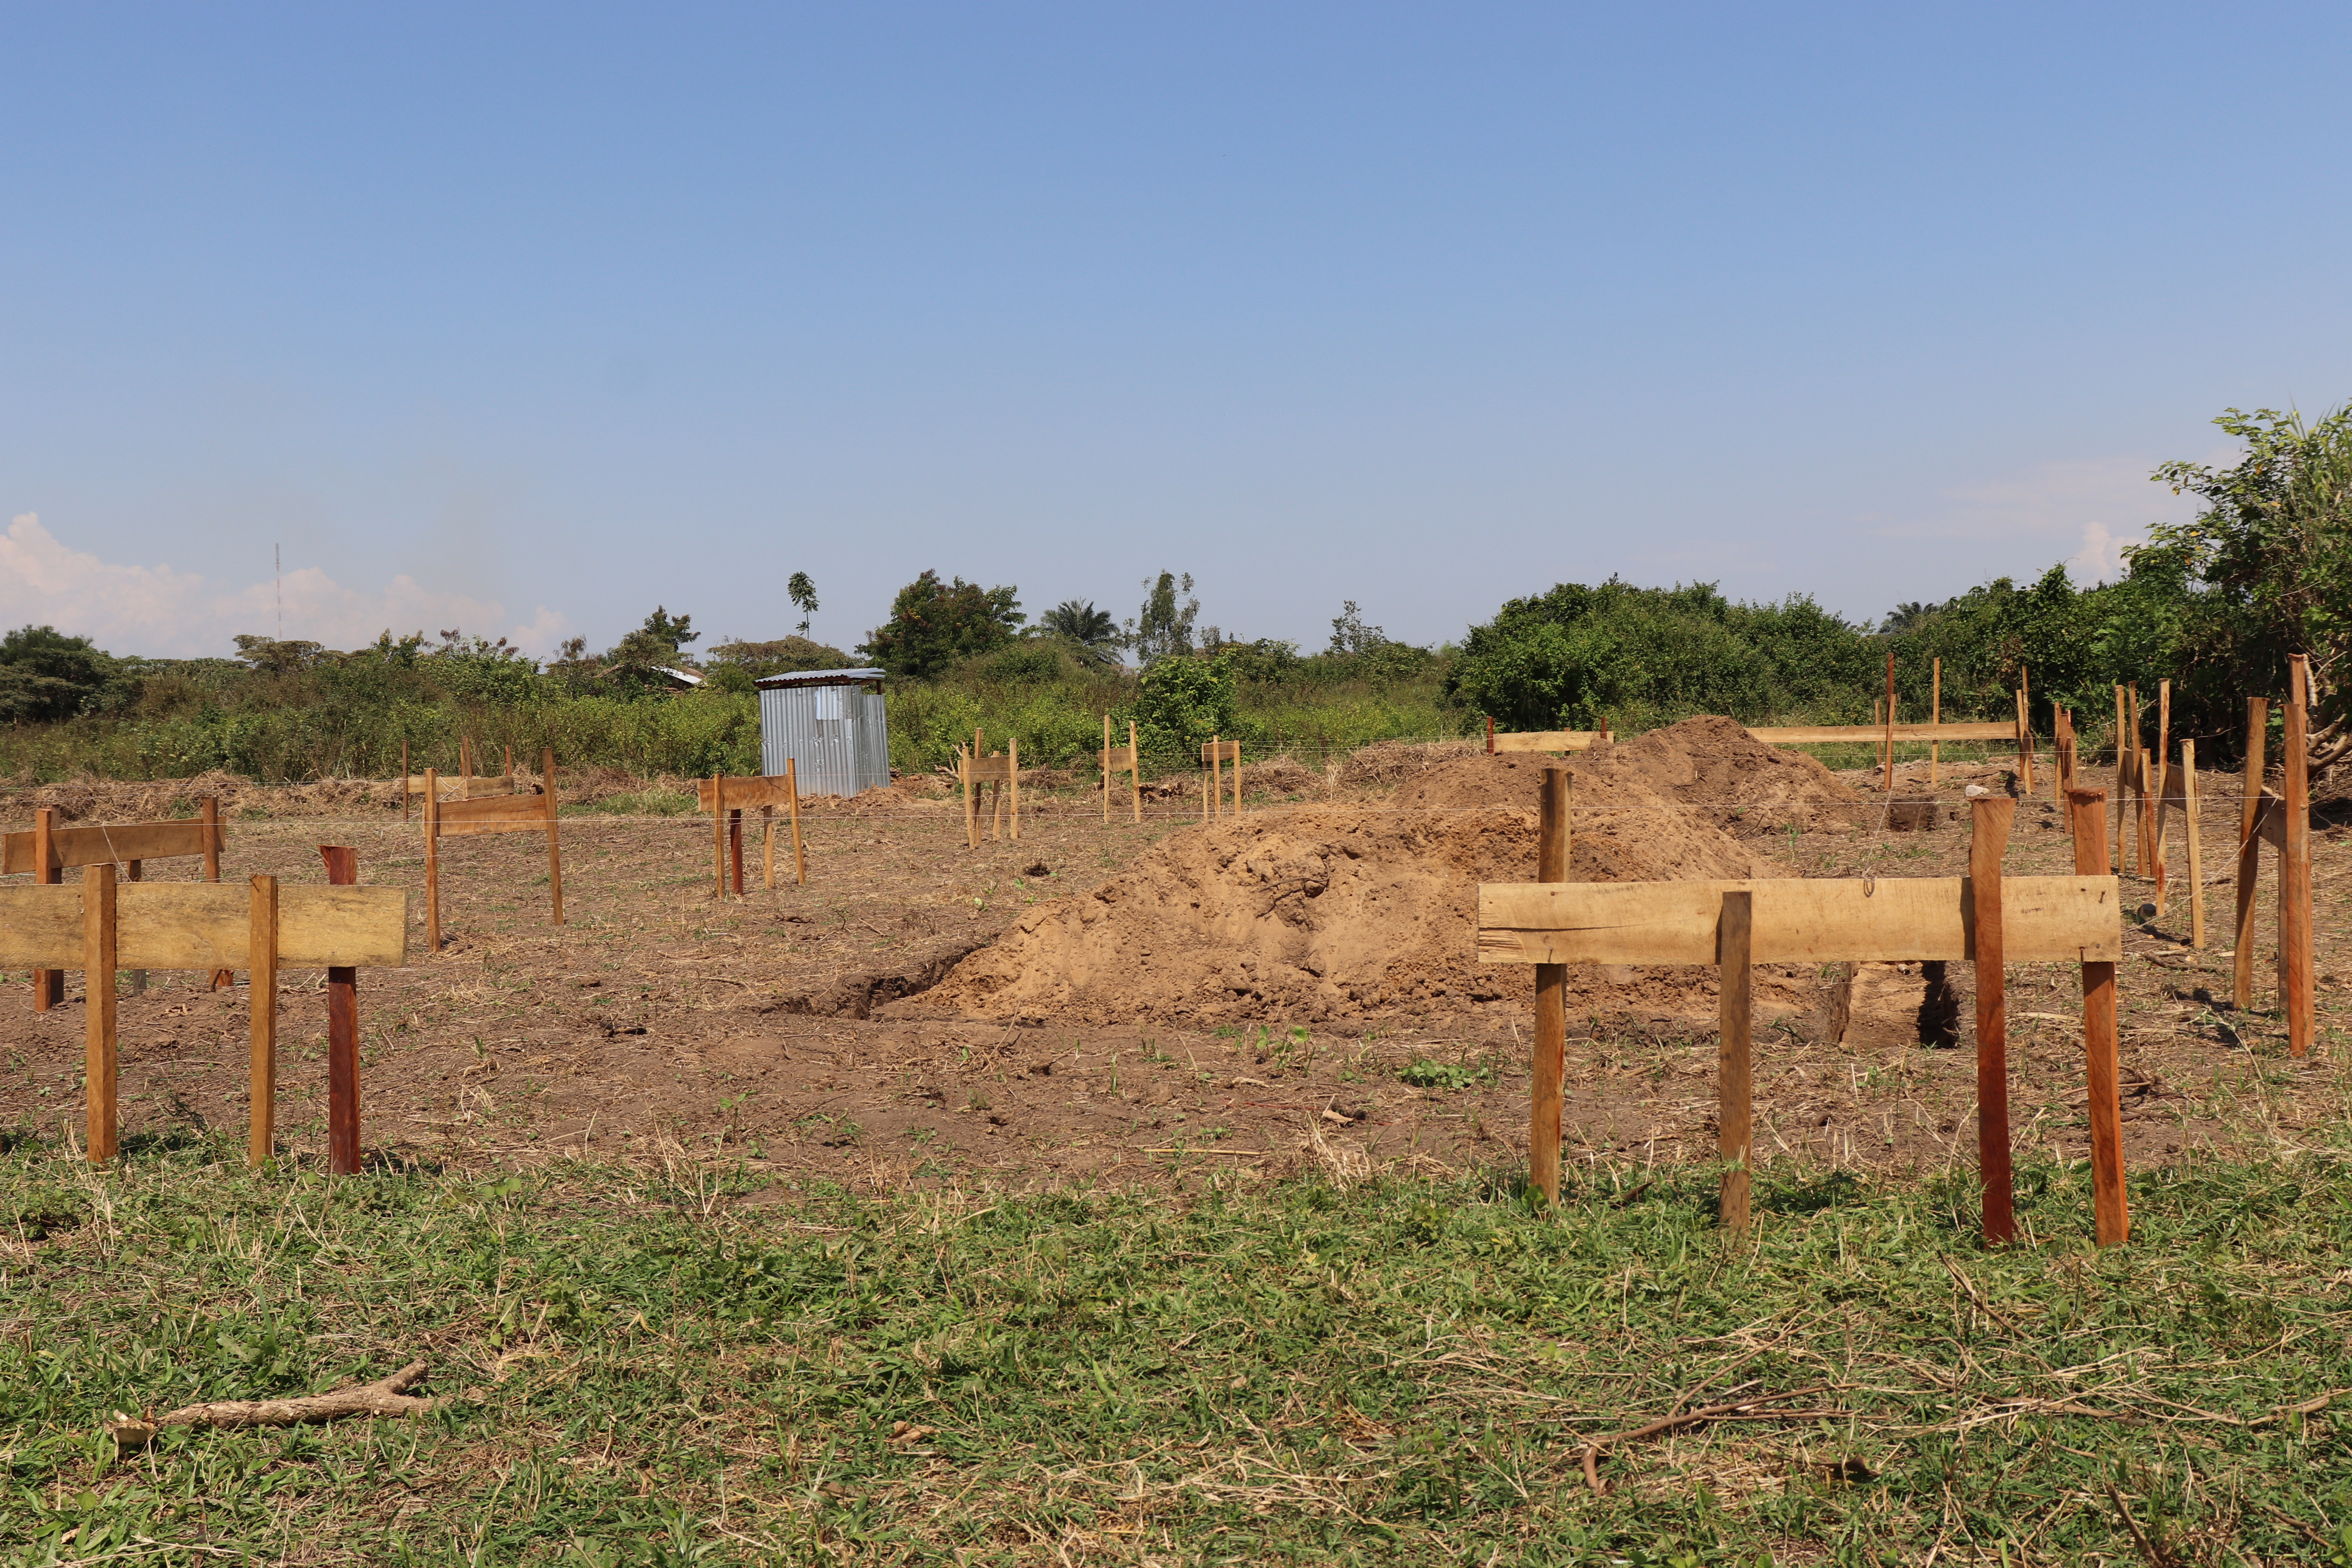 AFPDE lance les travaux de construction de trois infrastructures agricoles à Kiliba, Sange et Luvungi territoire d’Uvira